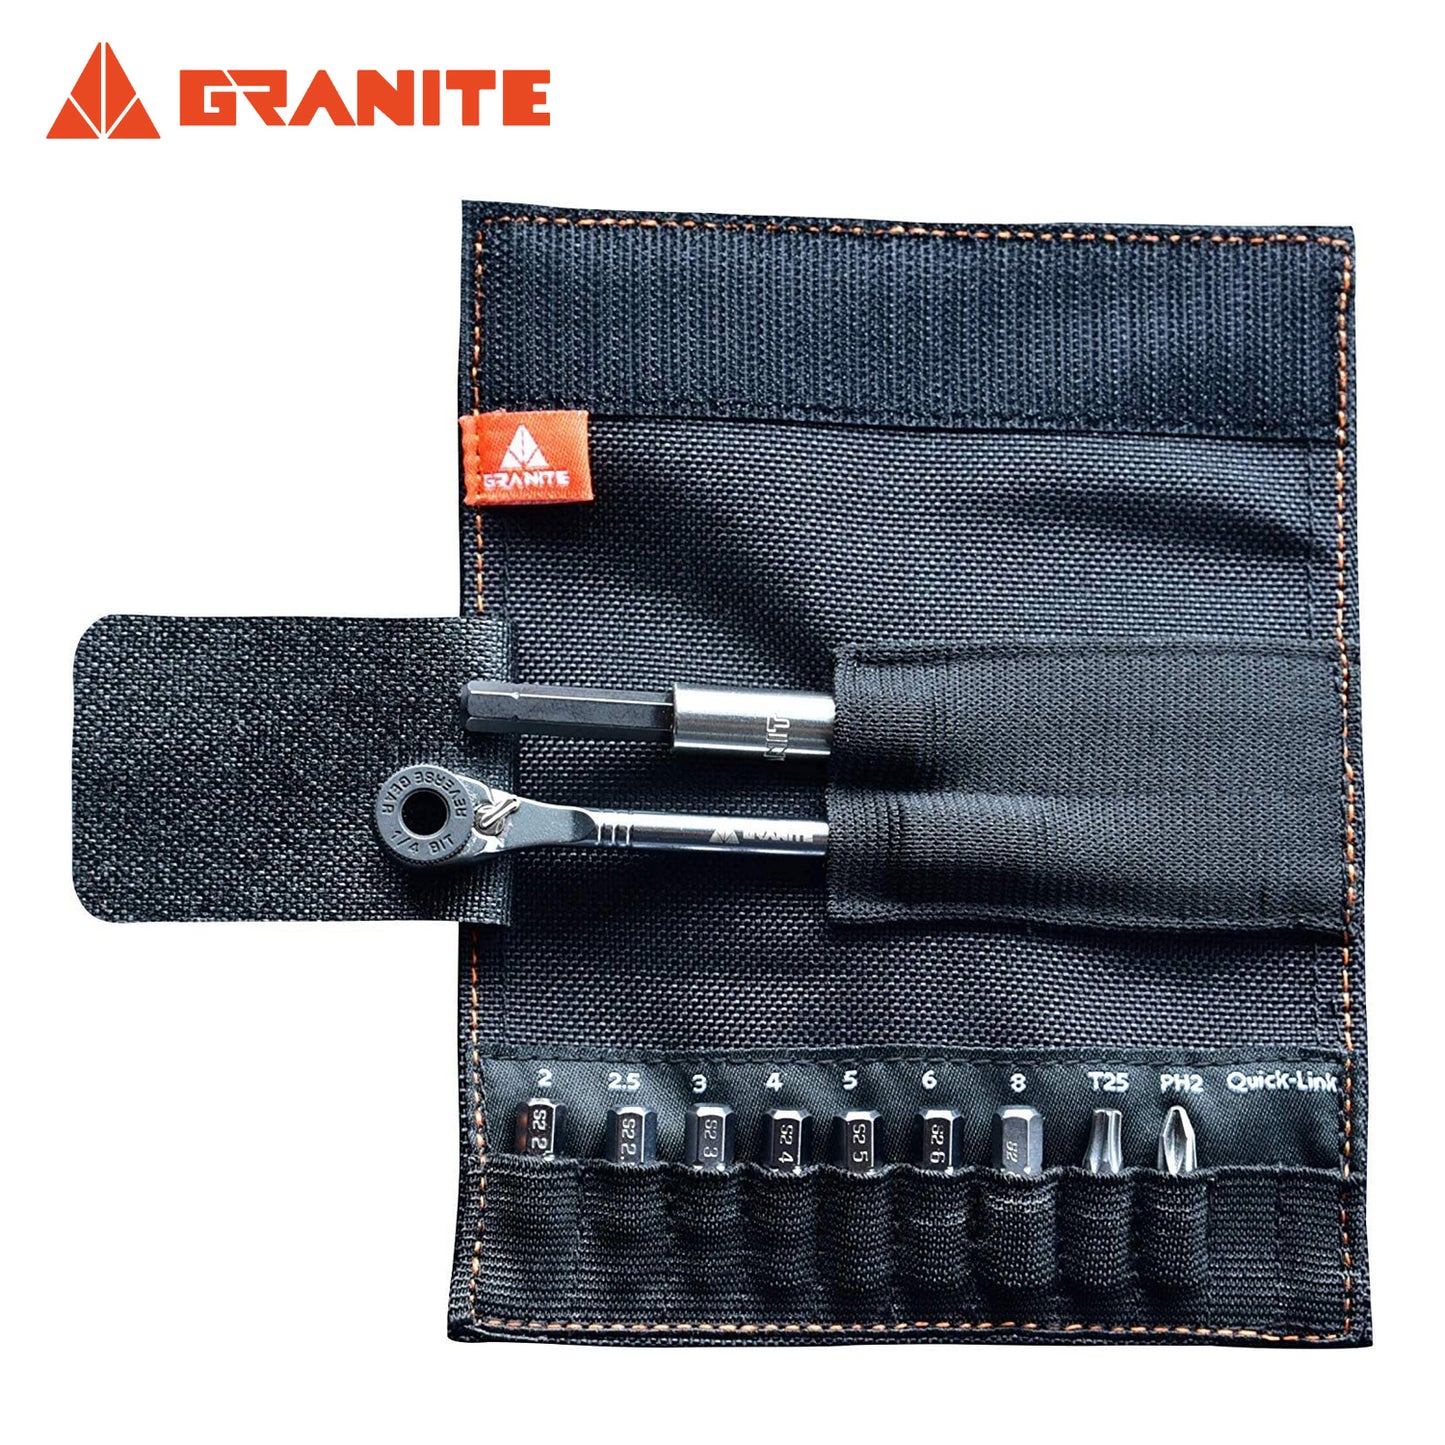 Granite Rocknroll Mini Ratchet Tool Kit - Black